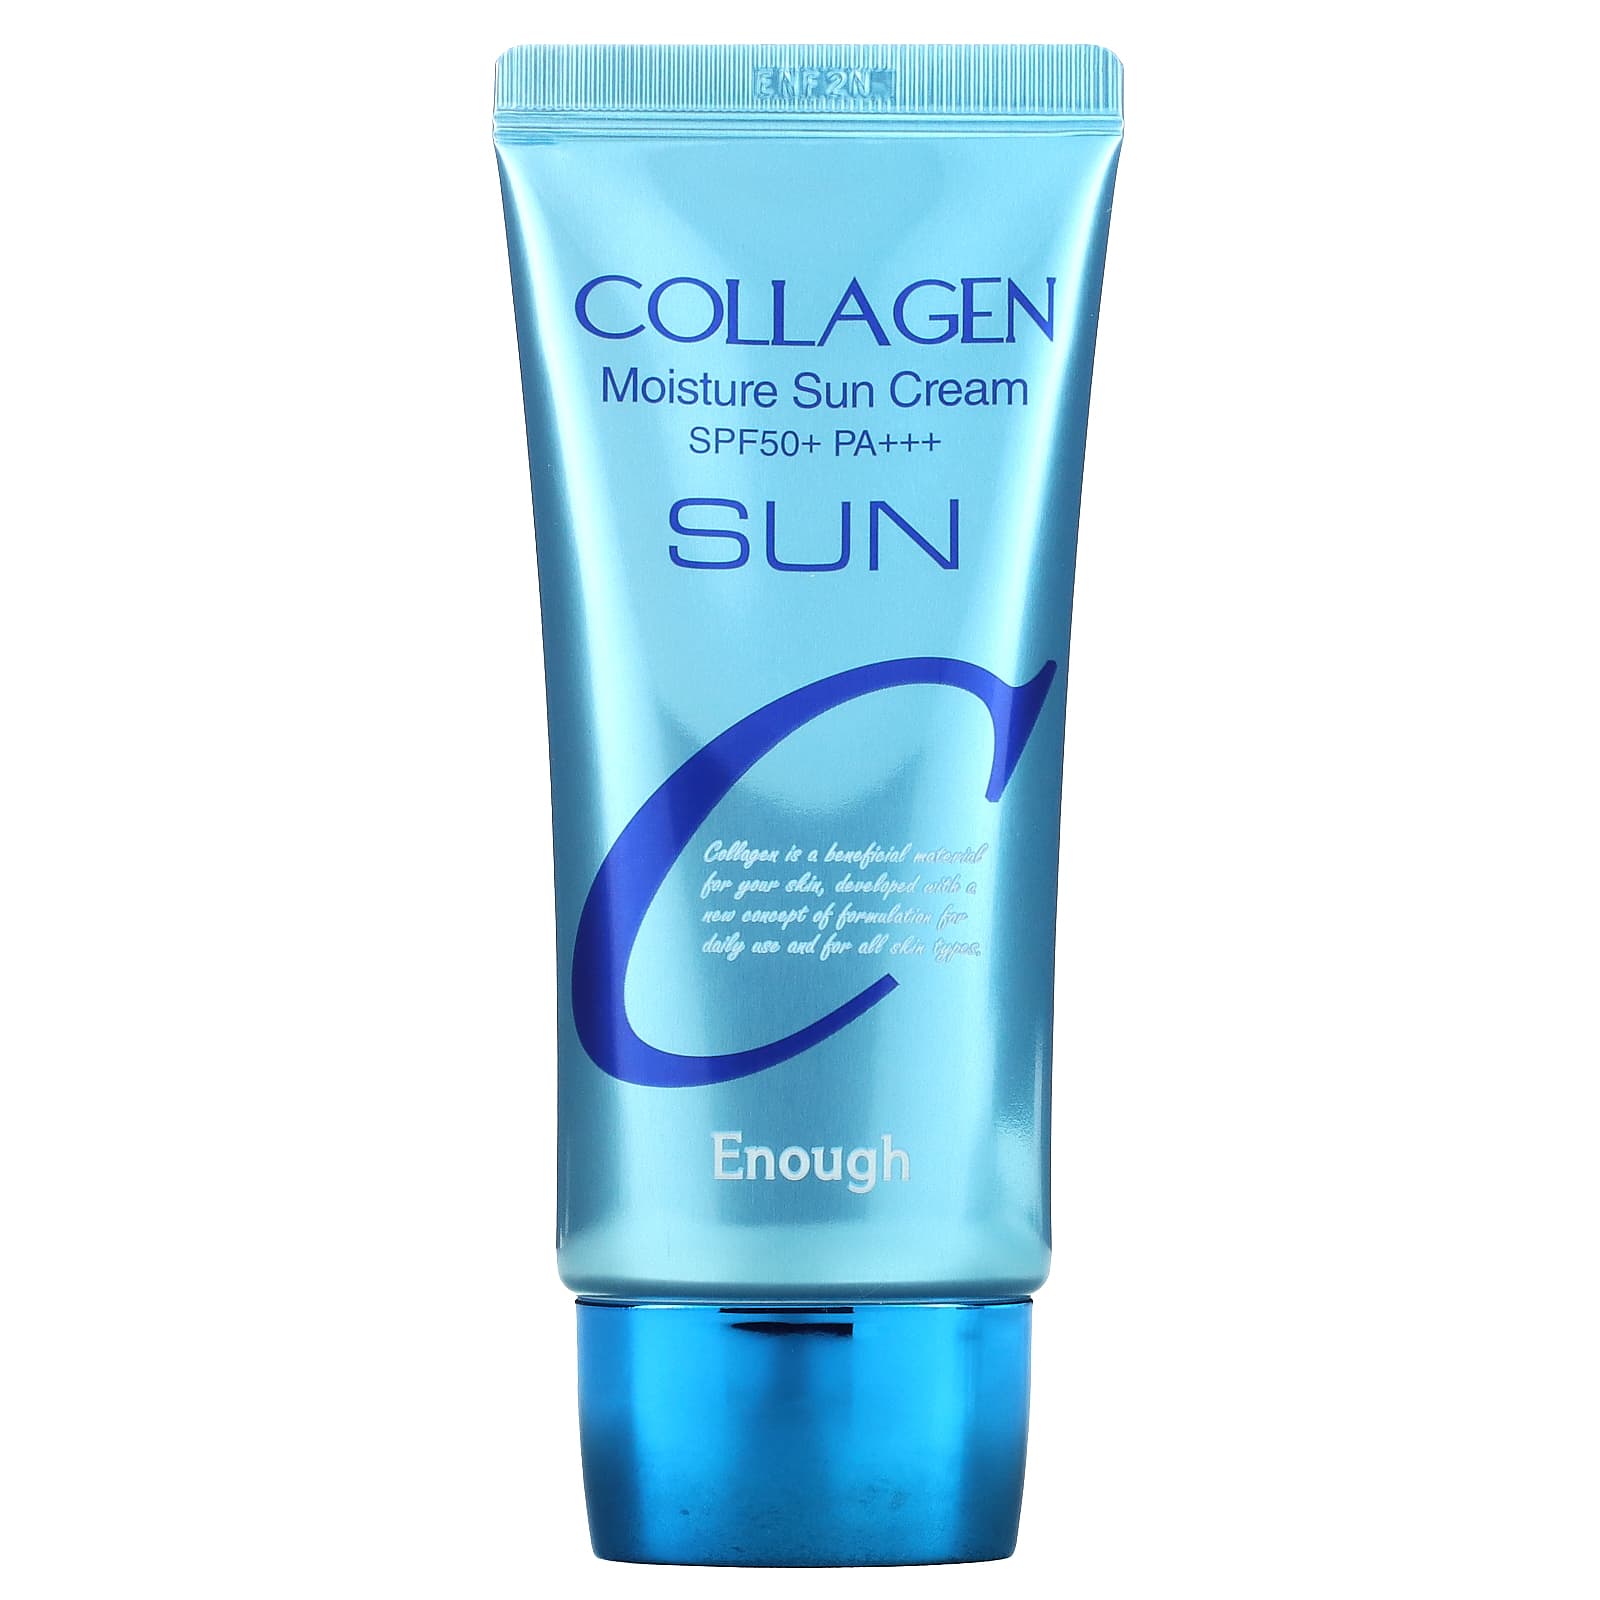 Коллаген sun. Enough Collagen SPF 50. Collagen Moisture Sun Cream spf50+. Солнцезащитный крем SPF 50+++ С коллагеном для лица и. SPF 50 корейский.